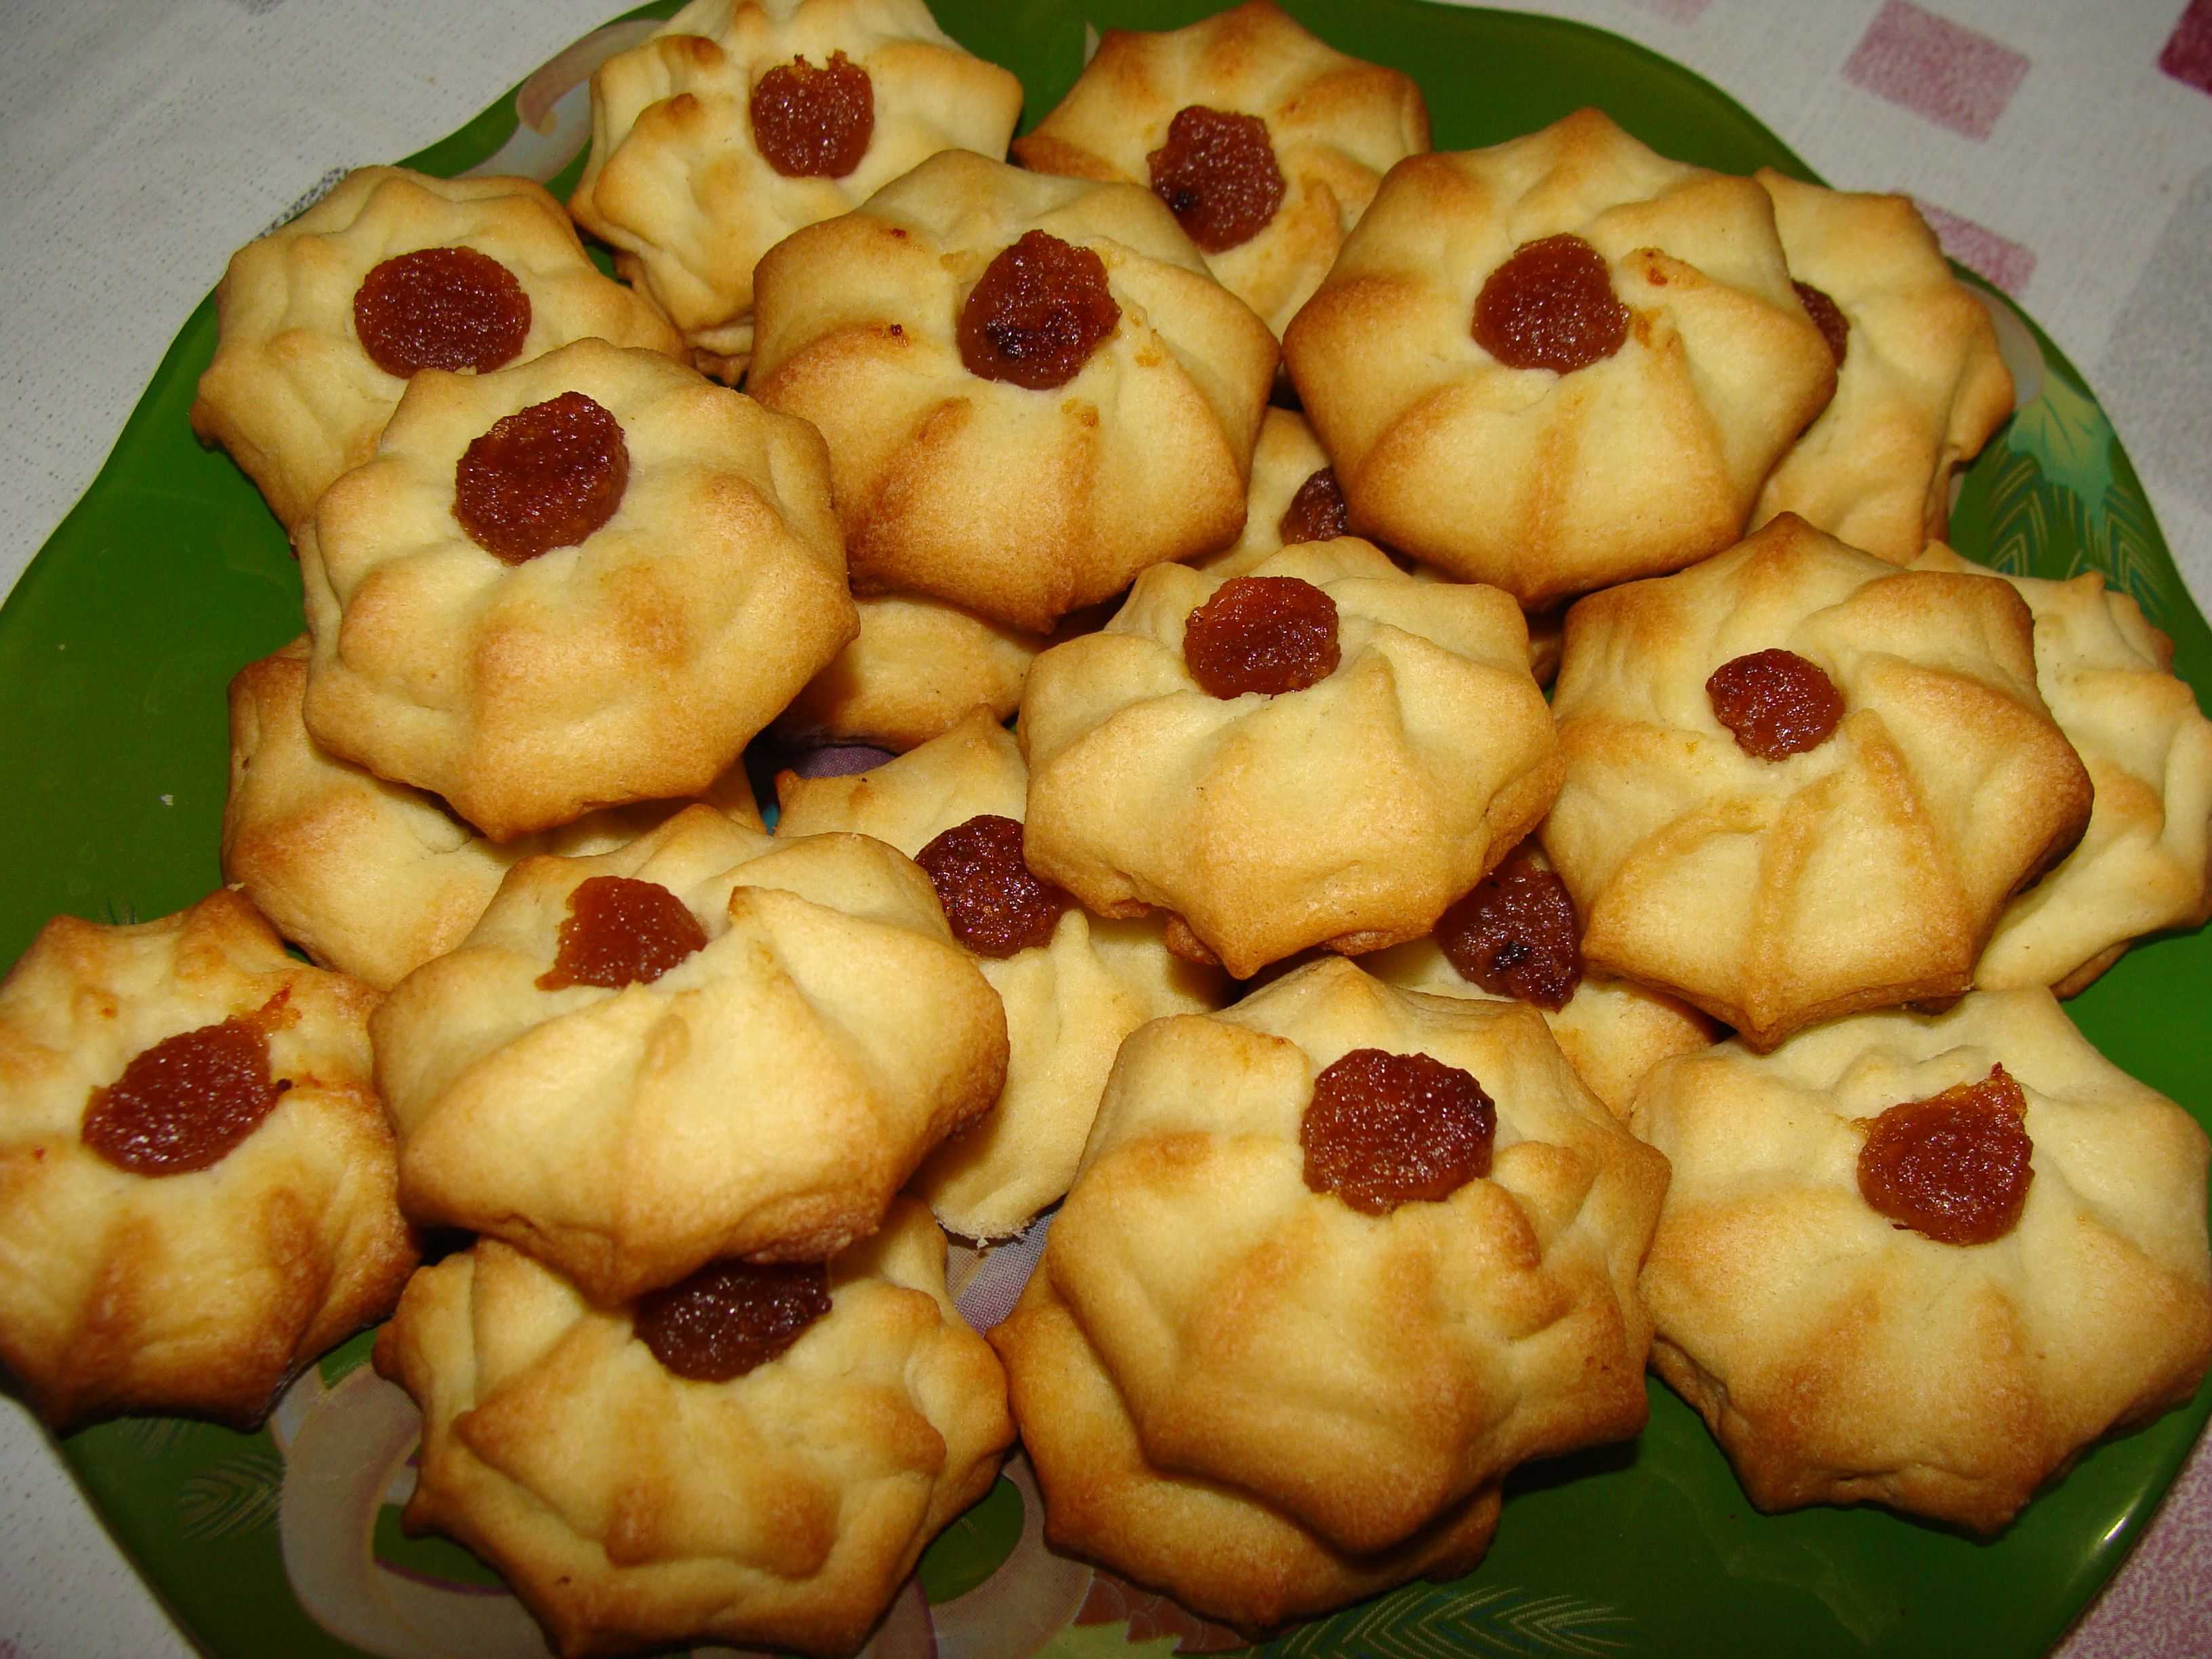 Как приготовить Песочное печенье Курабье Бакинское рецепт печенья в домашних условиях по госту